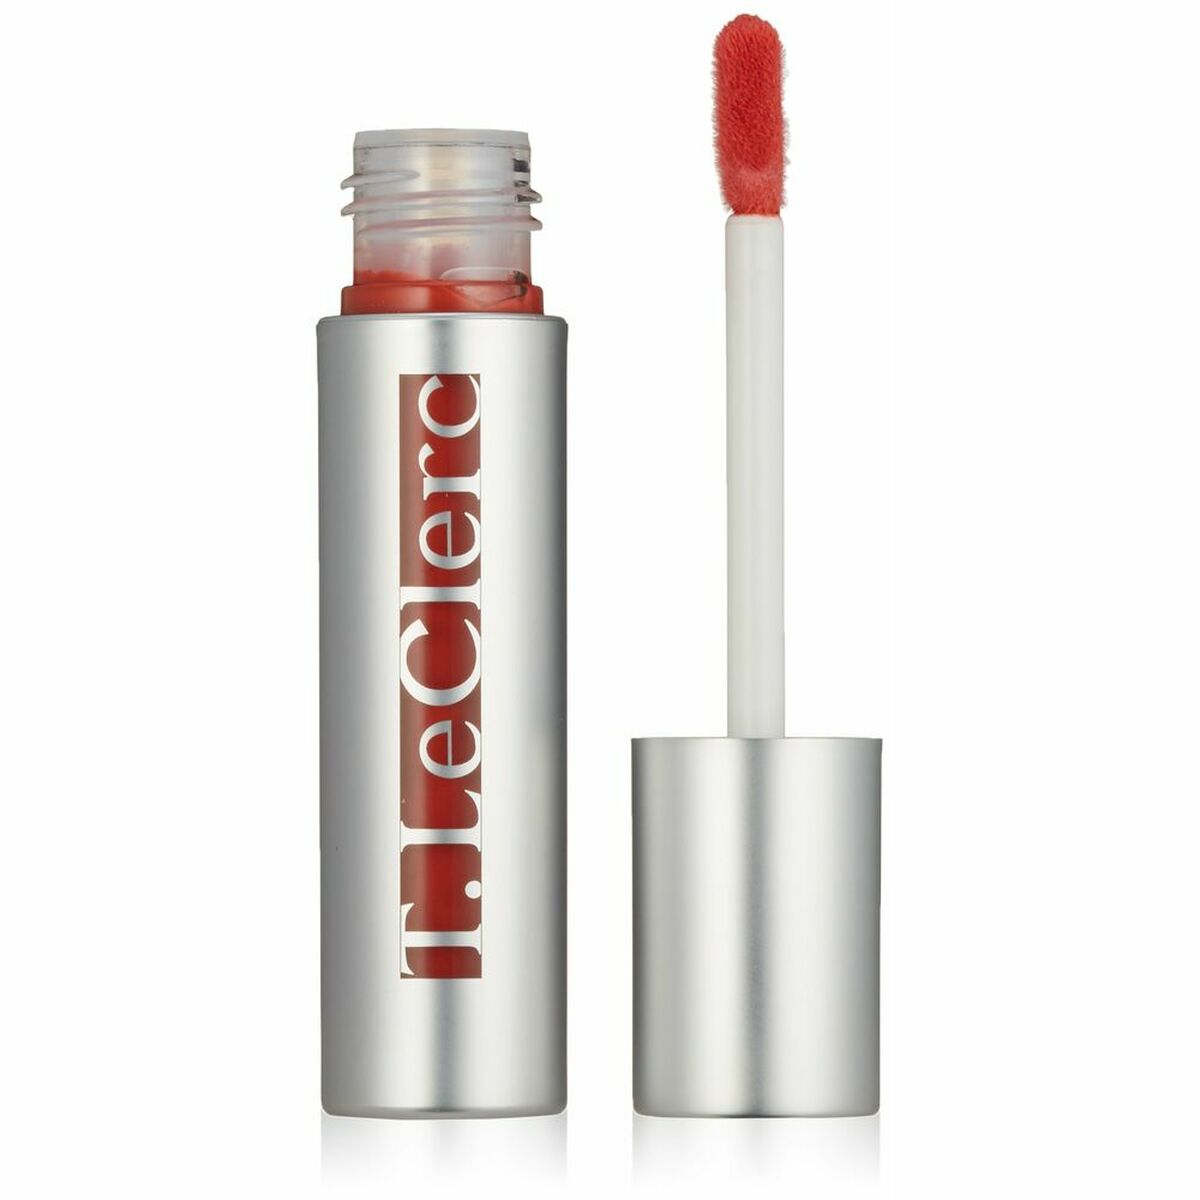 Lipstick LeClerc 02 Paprika